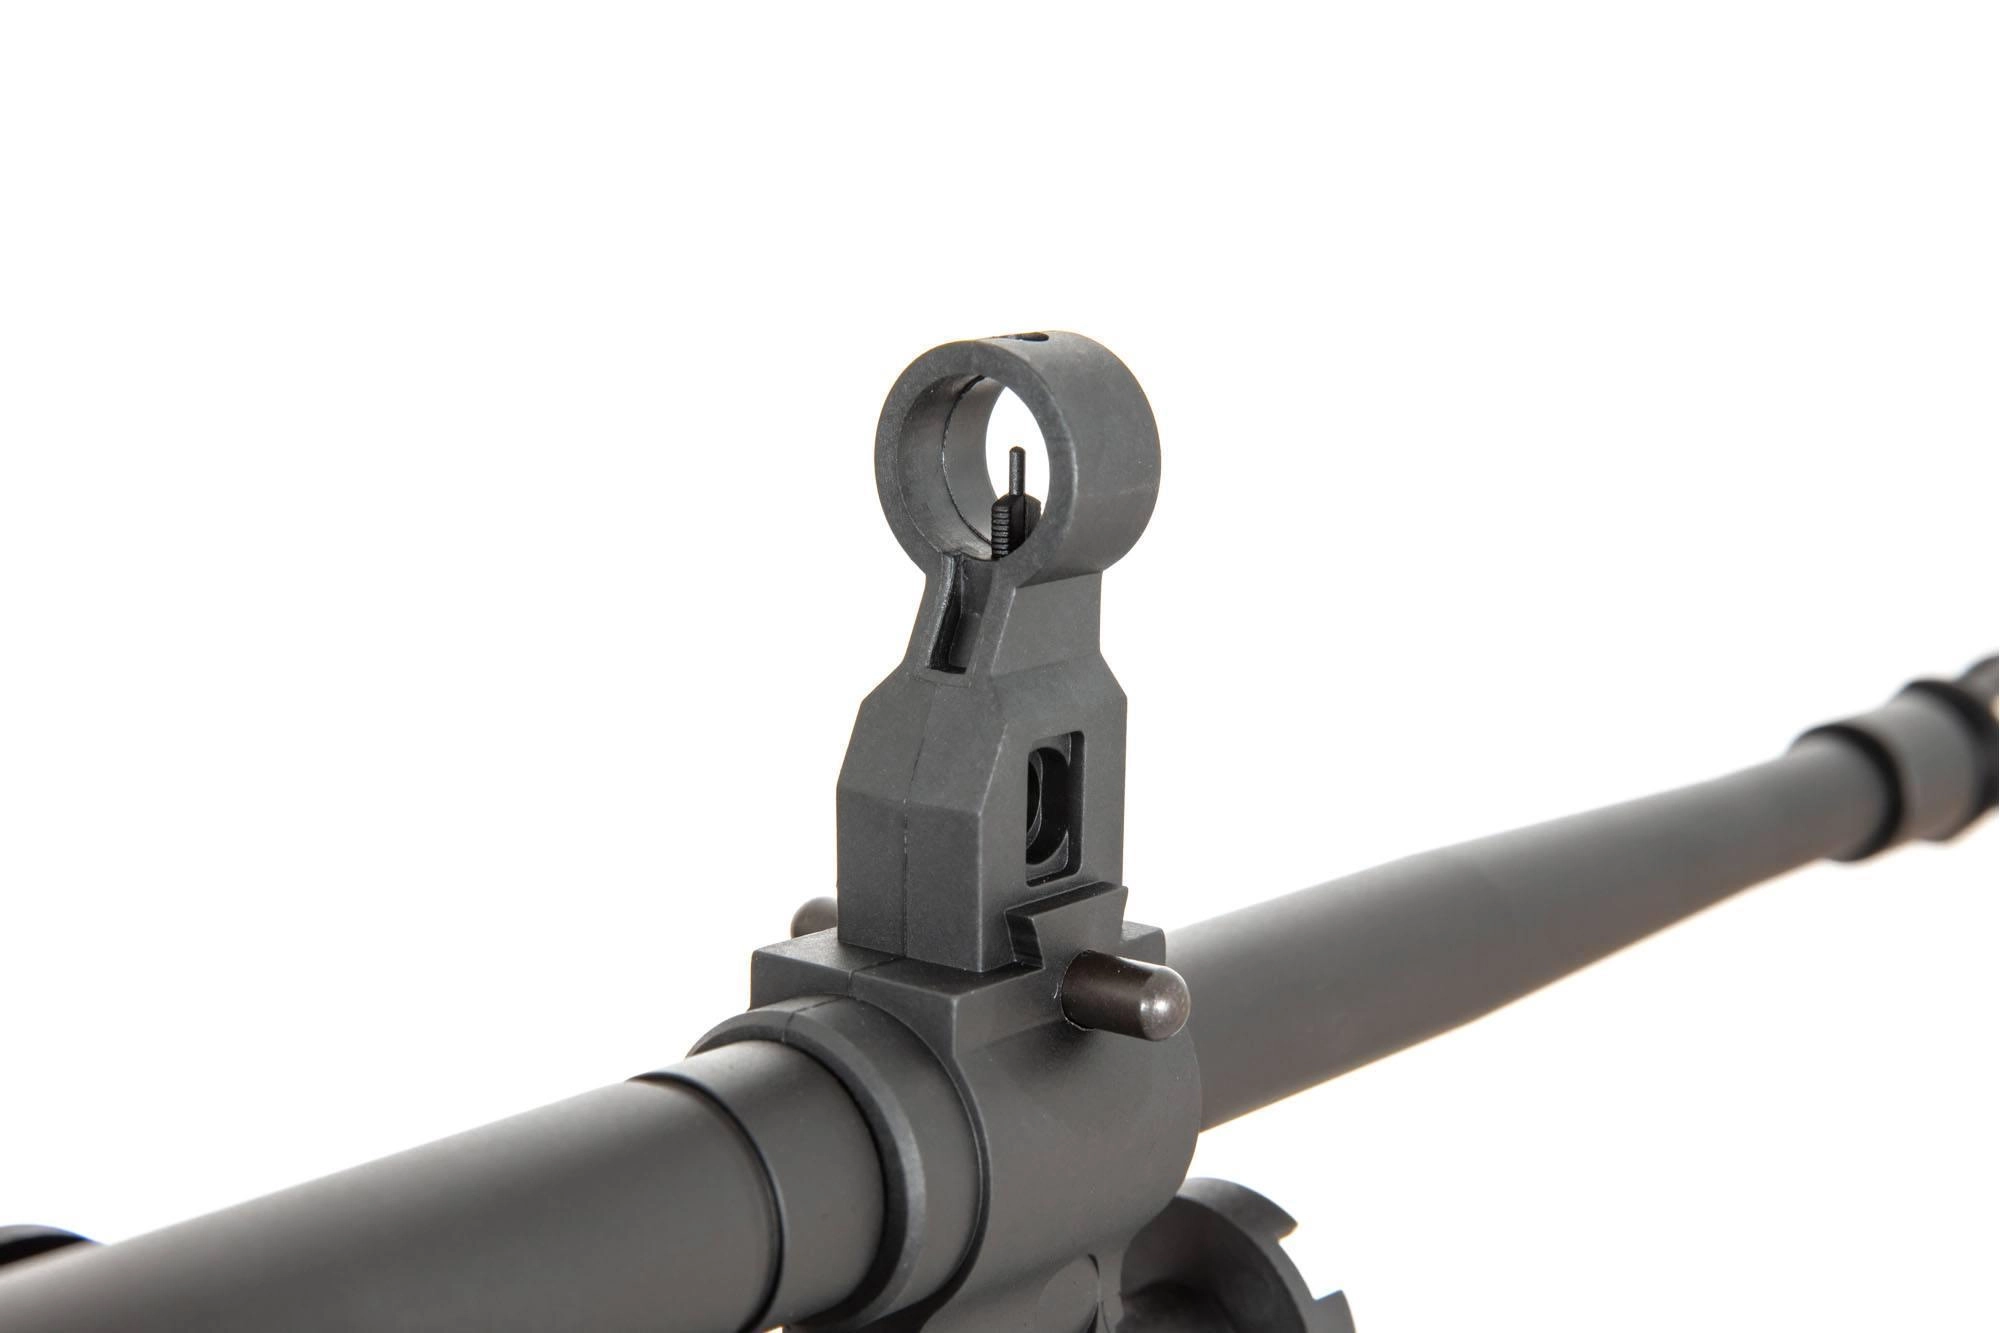 Specna Arms M249 SA-249 MK1 CORE AEG konekivääri - musta